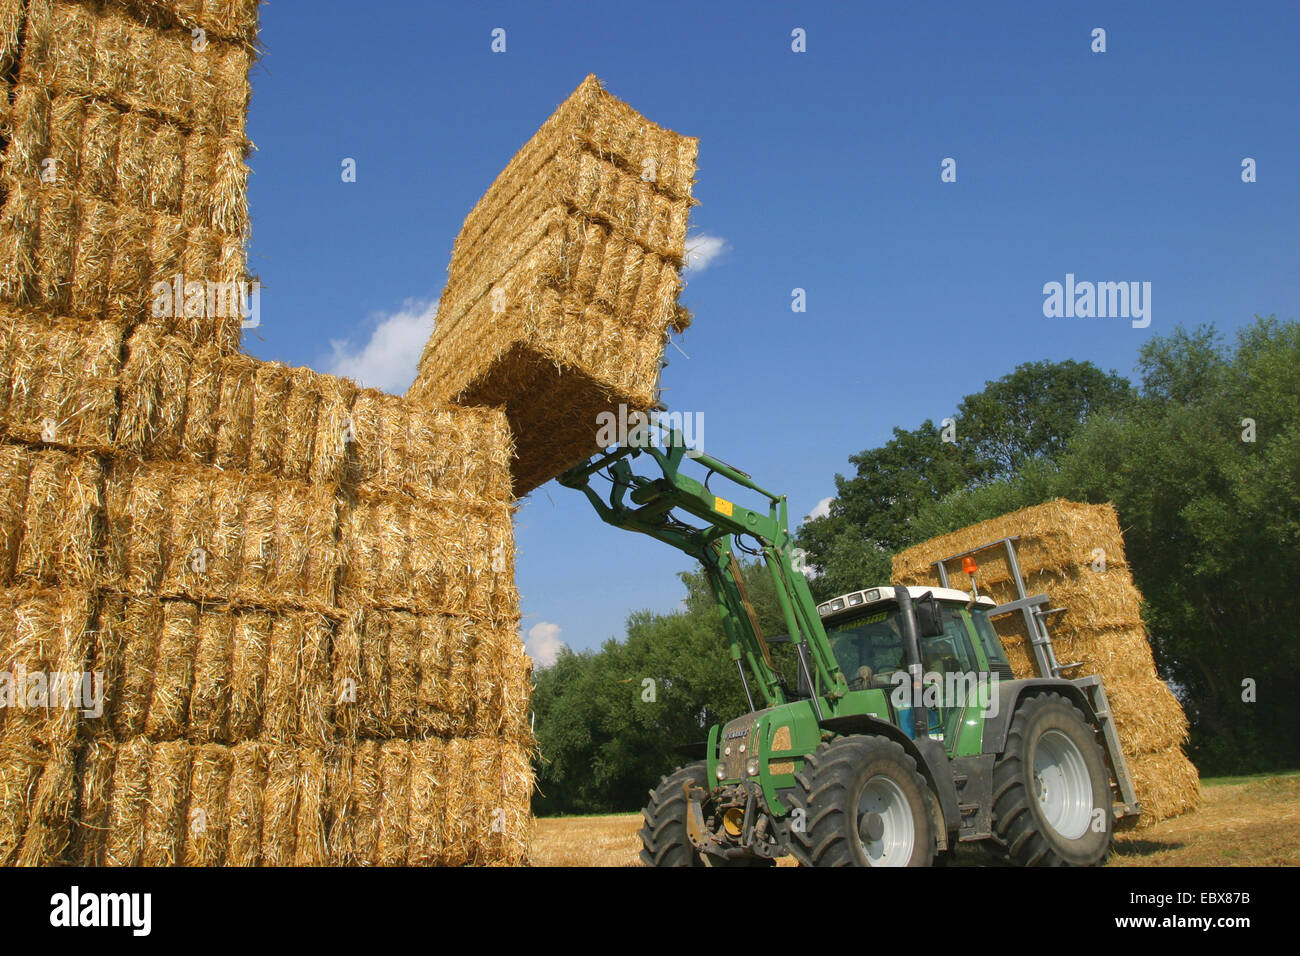 Tracteur avec des bottes de paille Photo Stock - Alamy